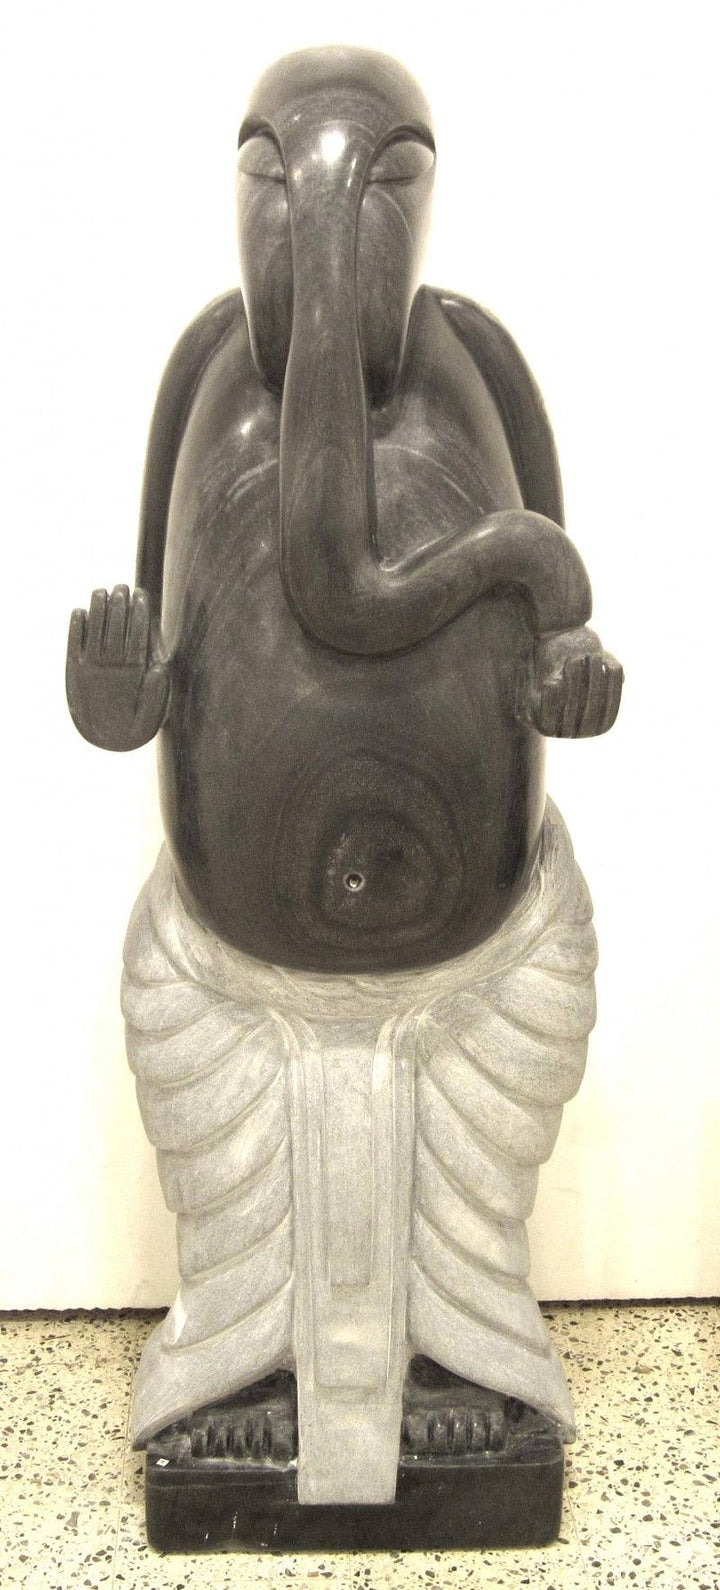 Blessing Ganpati Sculpture by Lallan Singh | ArtZolo.com